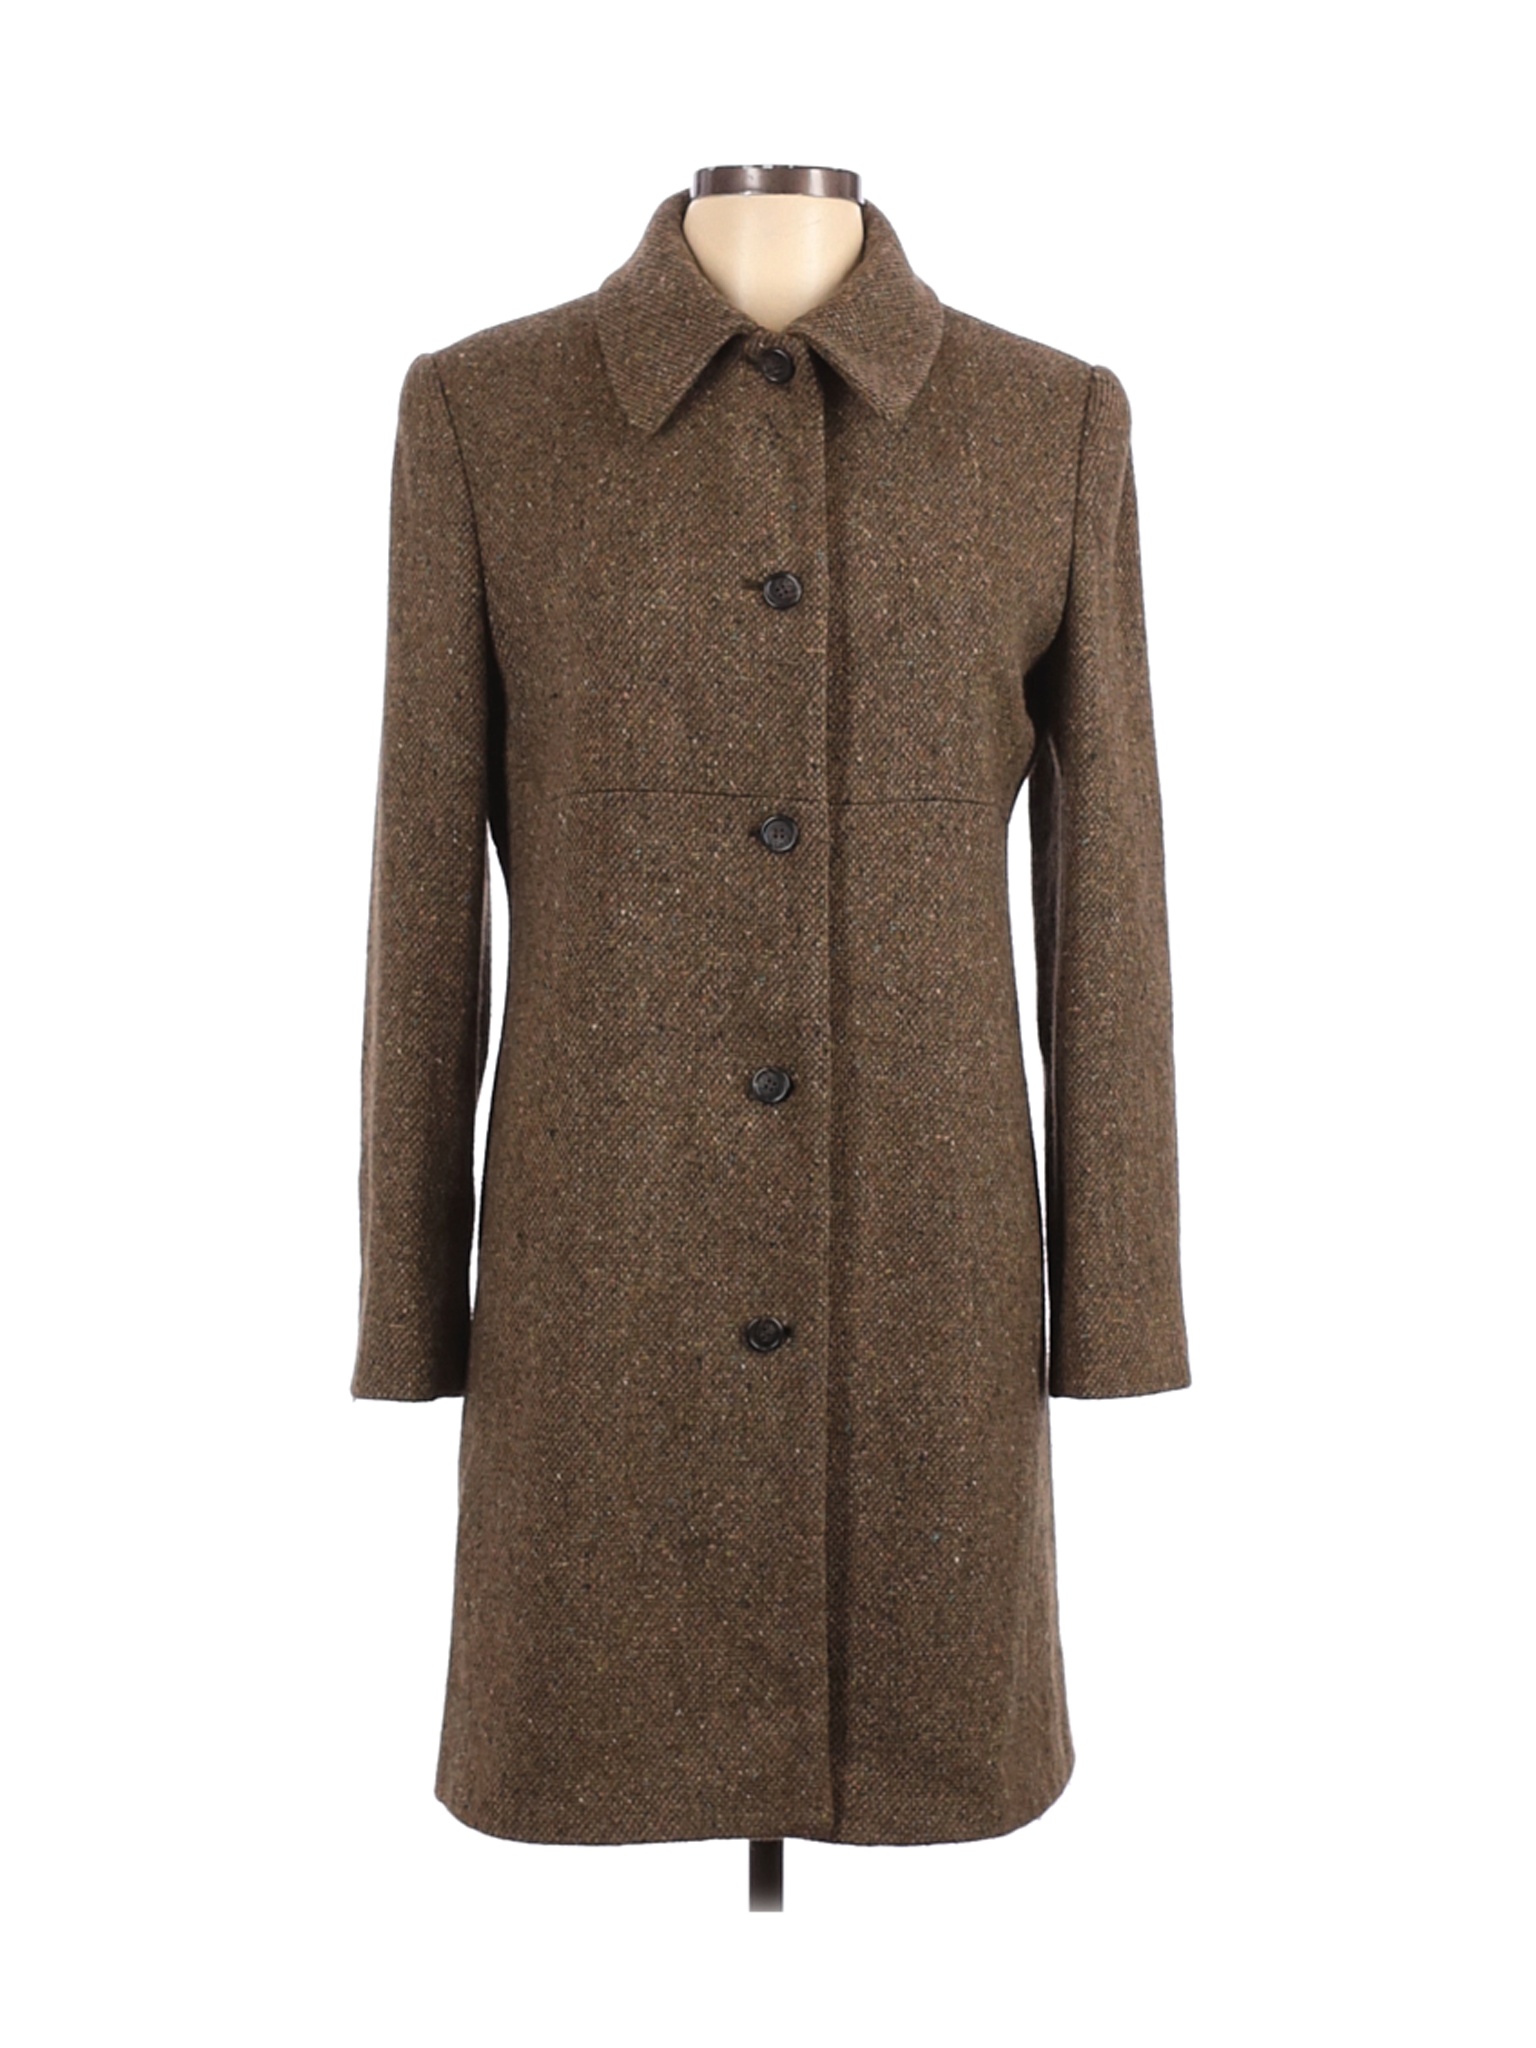 Steve by Searle Women Brown Wool Coat 8 | eBay